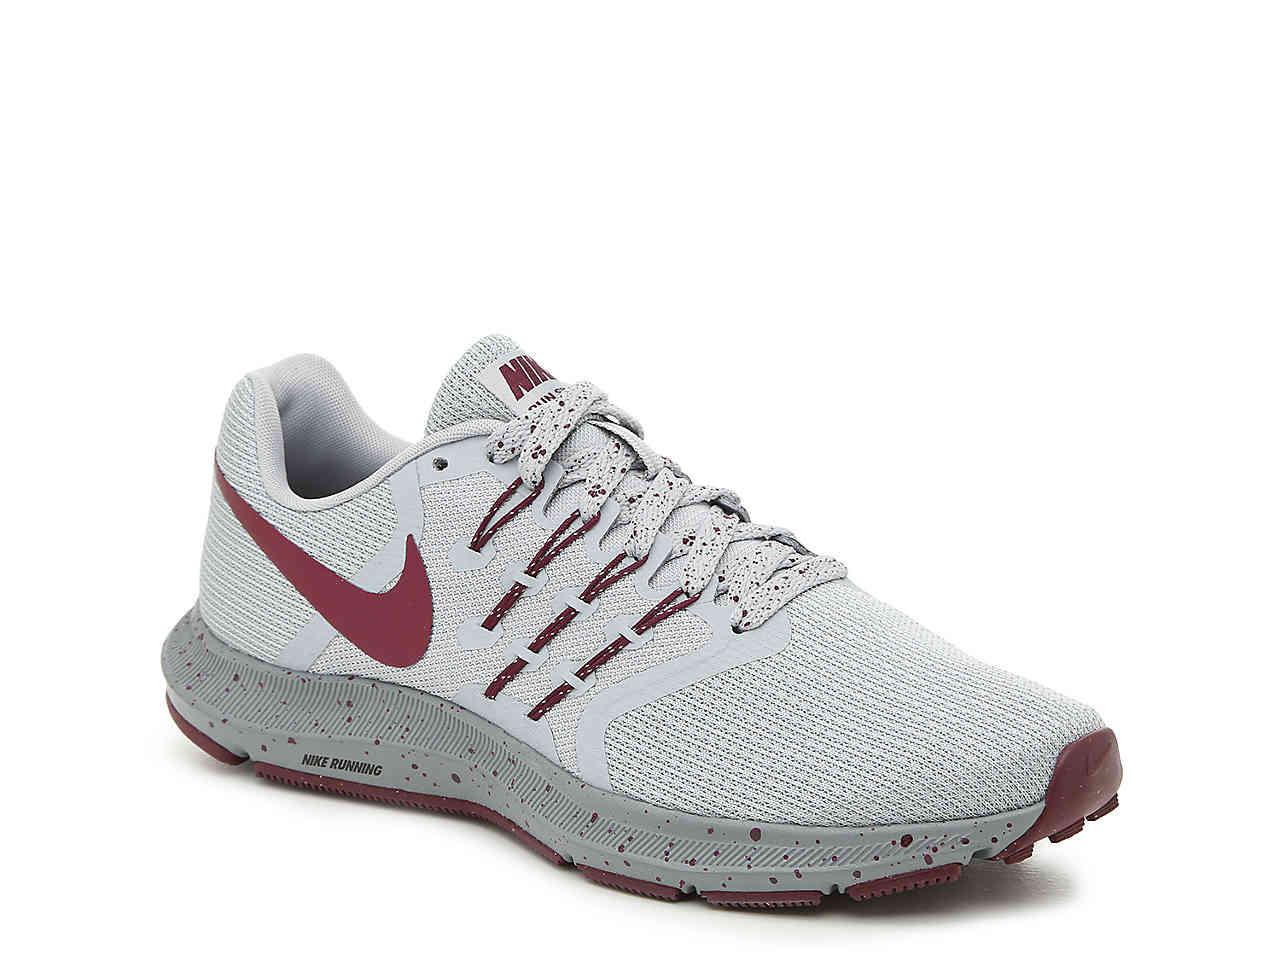 Nike Rubber Run Swift Lightweight Running Shoe in Grey/Maroon (Gray) - Lyst